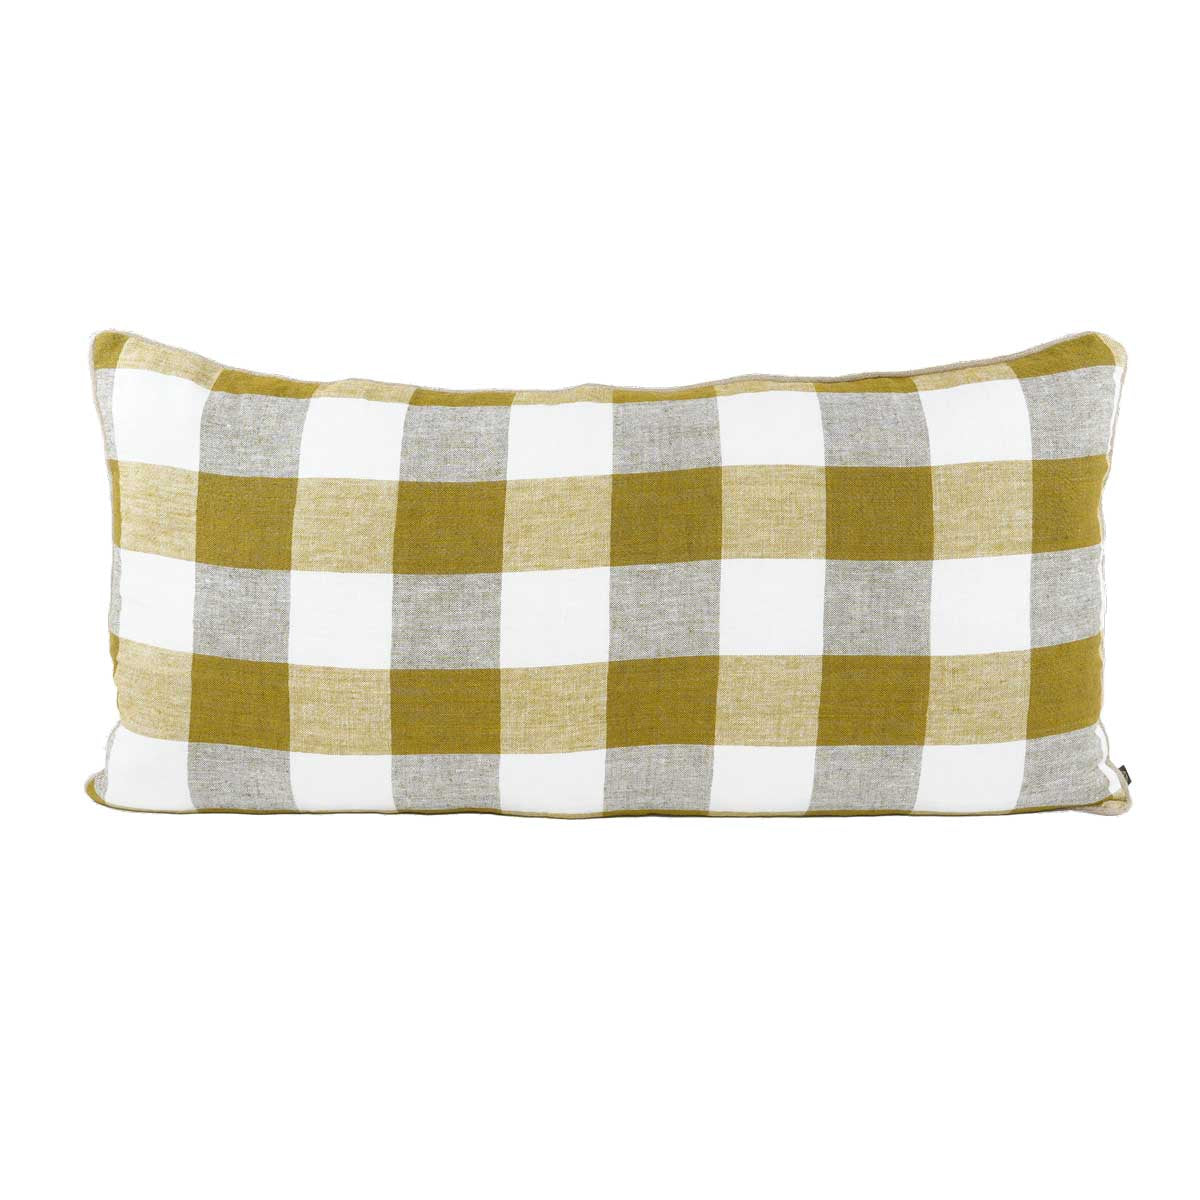 Piana square linen cushion cover 45x45 cm - Harmony Haomy